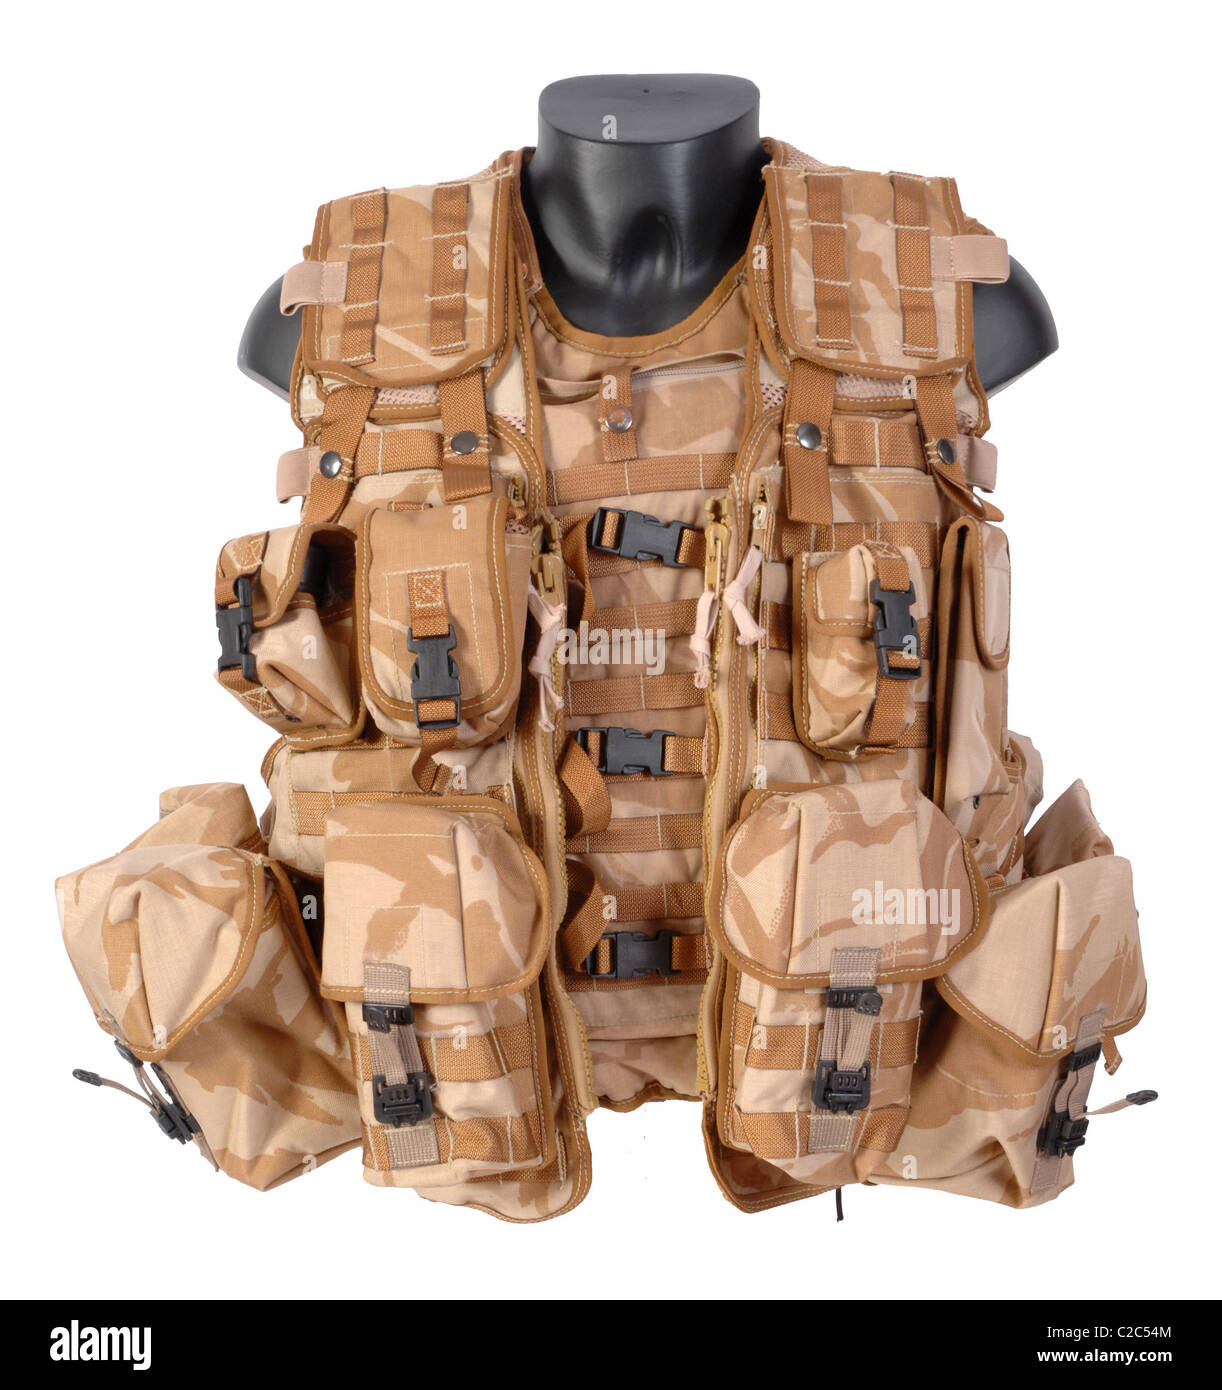 Osprey Mk II body armour vest. Indossato sopra la corazza è il giubbotto, tattiche di trasporto di carico progettato per essere indossato con la Osprey ves Foto Stock